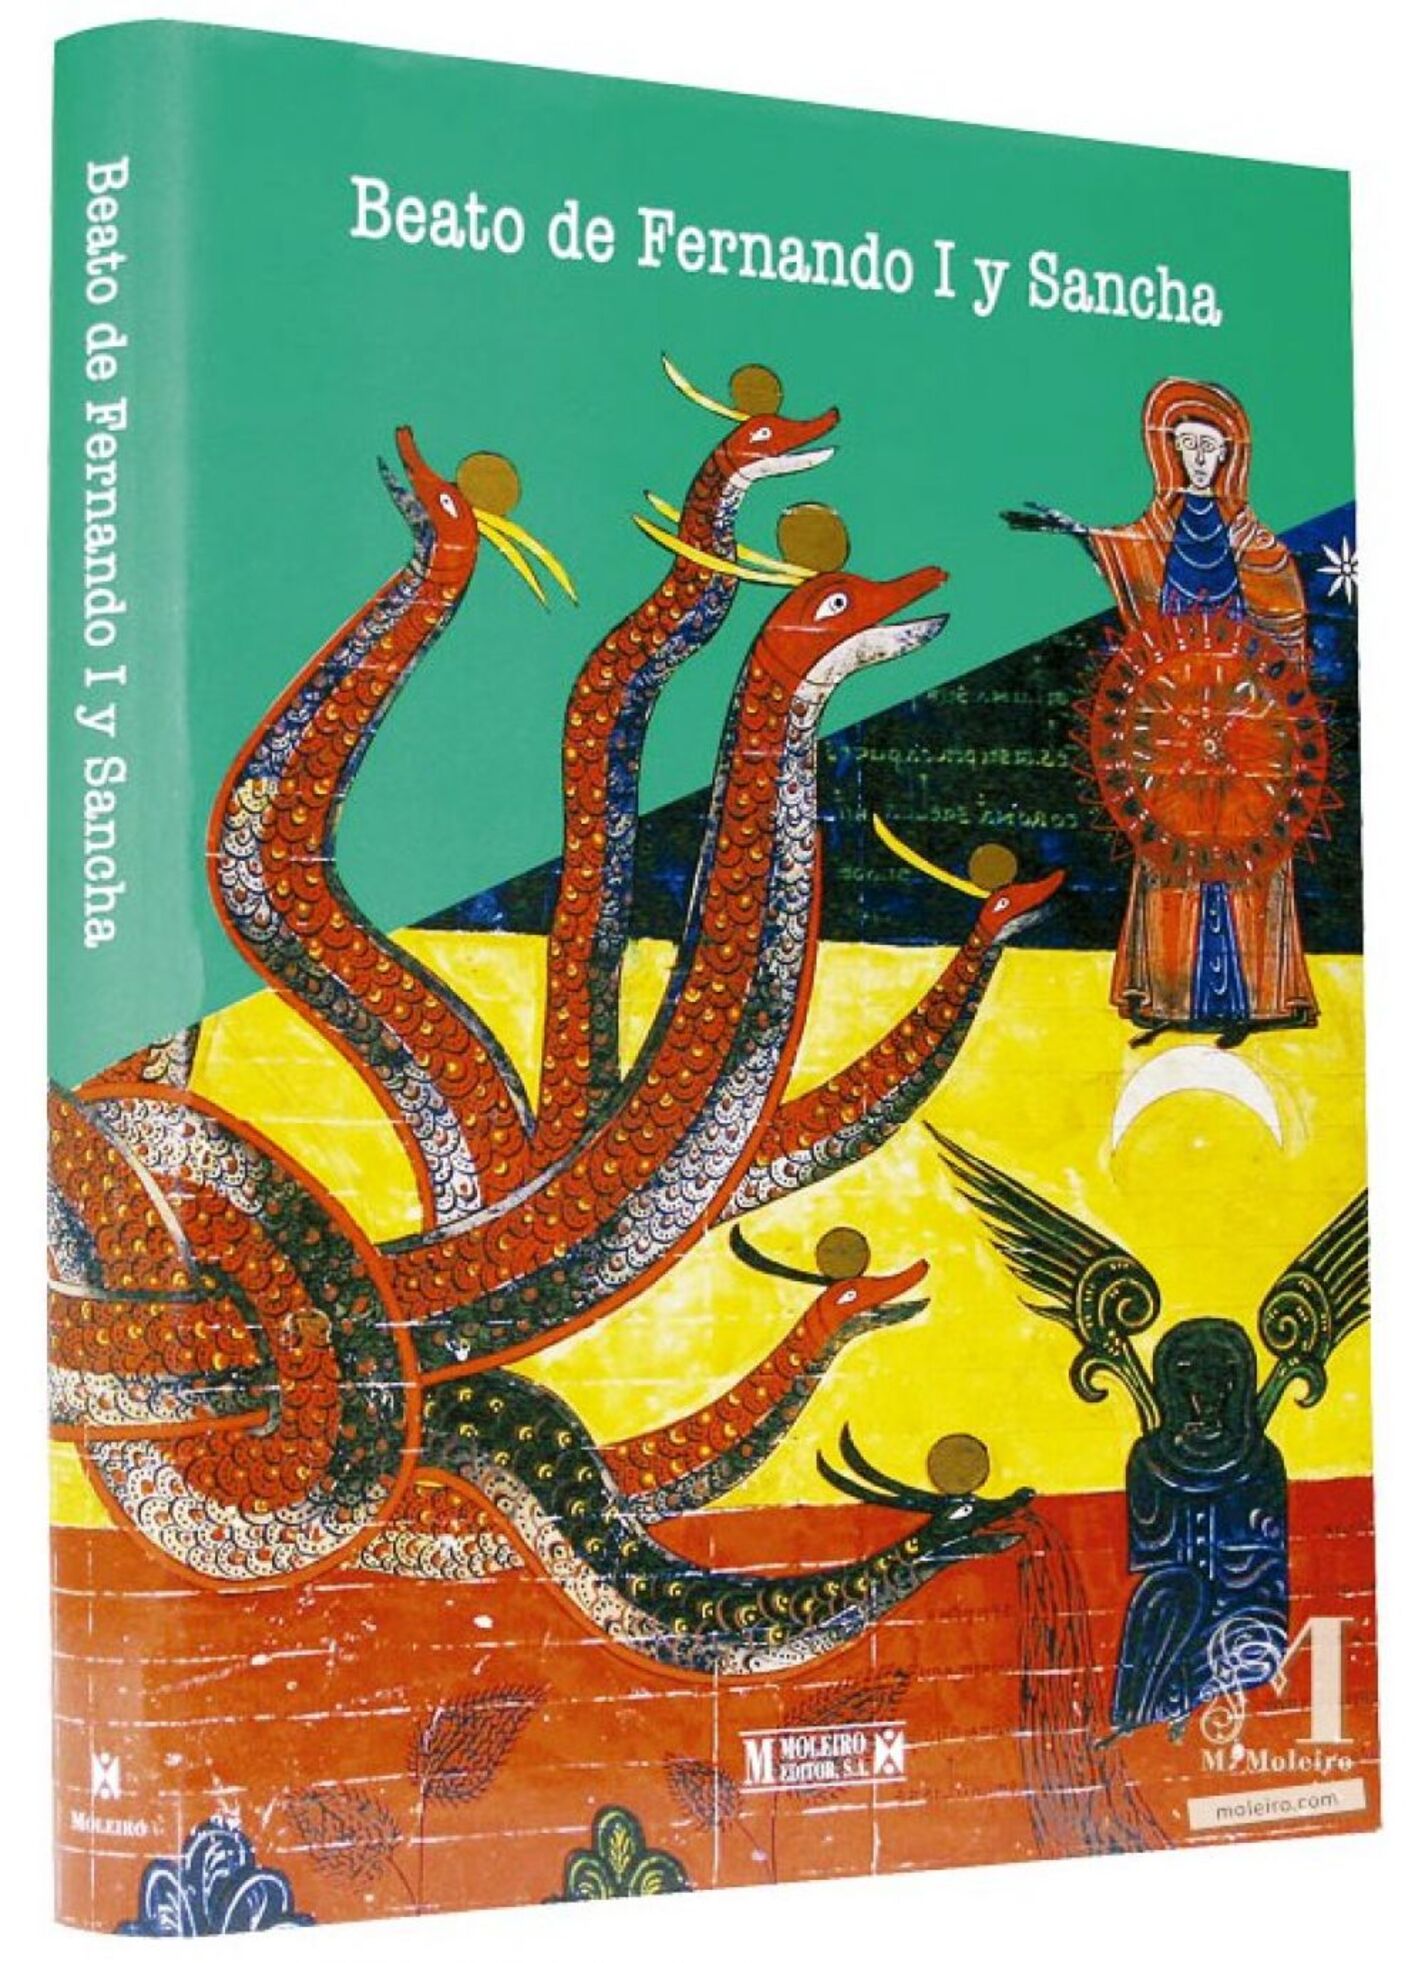 Detalle de la portada y lomo del libro de arte del Beato de Fernando I y Sancha